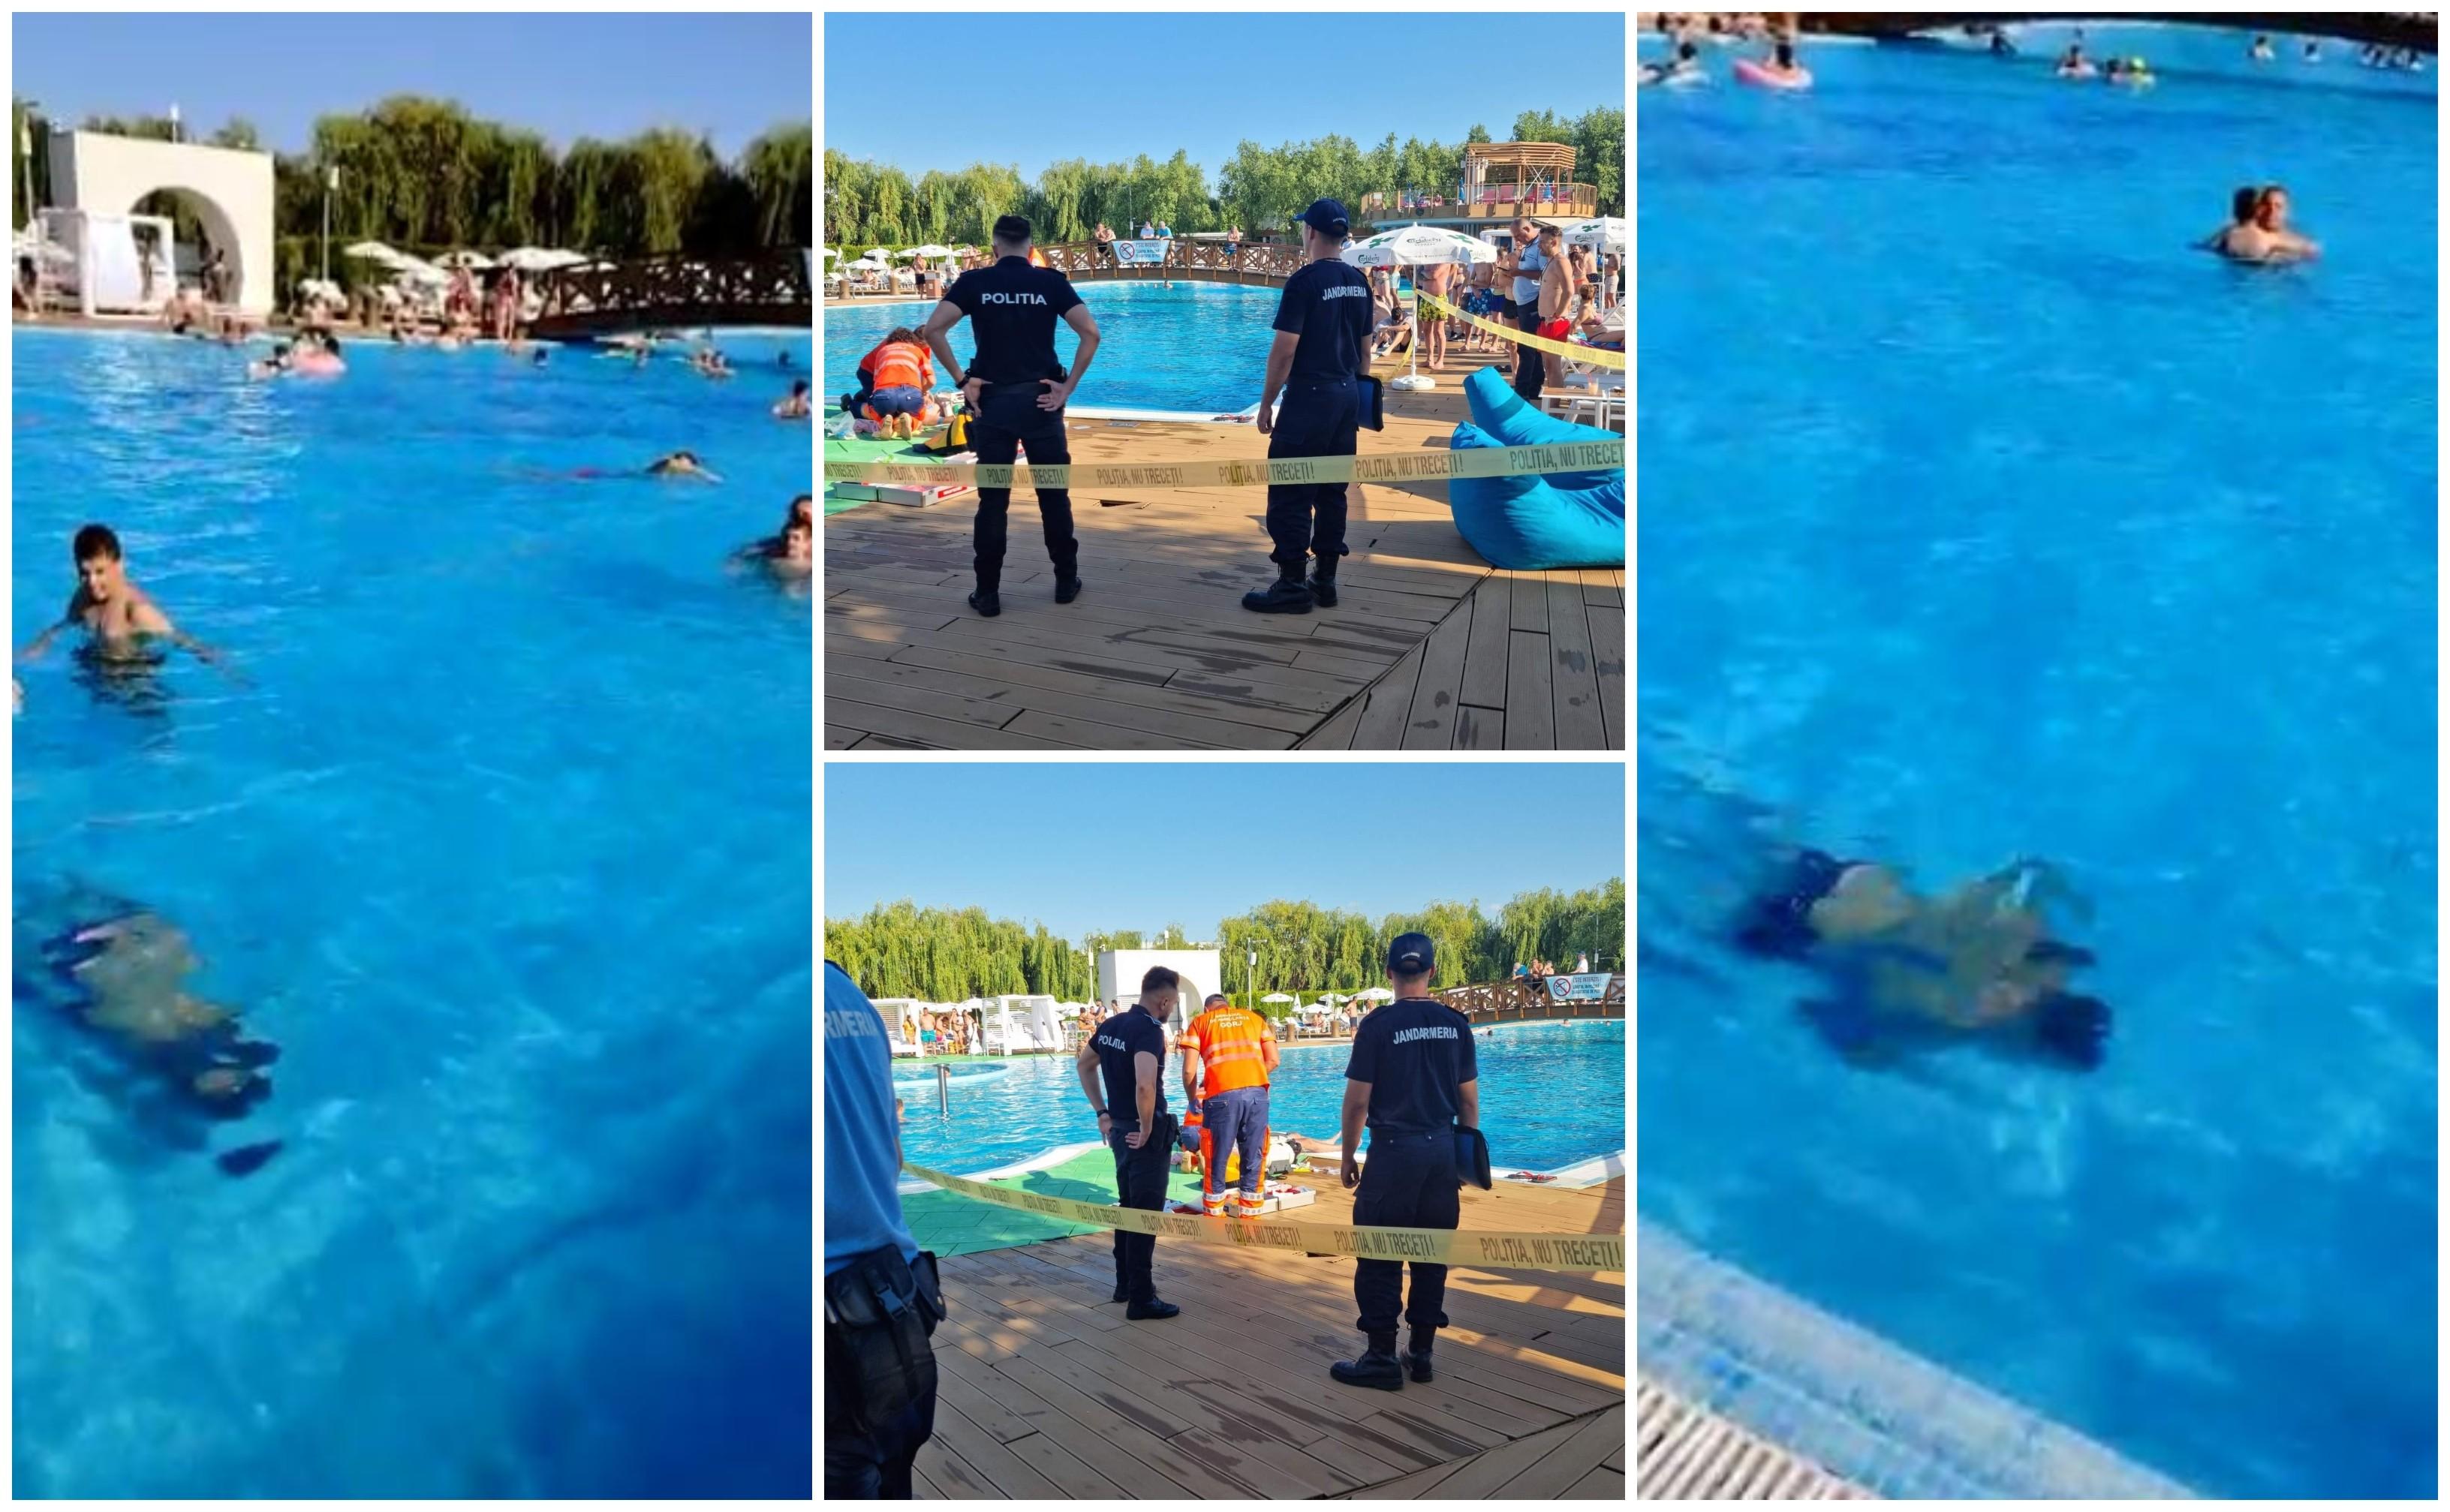 Ultimele clipe din viaţa unui bărbat din Gorj, filmate cu telefonul. S-a înecat în piscină sub privirile oamenilor, dar nimeni nu şi-a dat seama